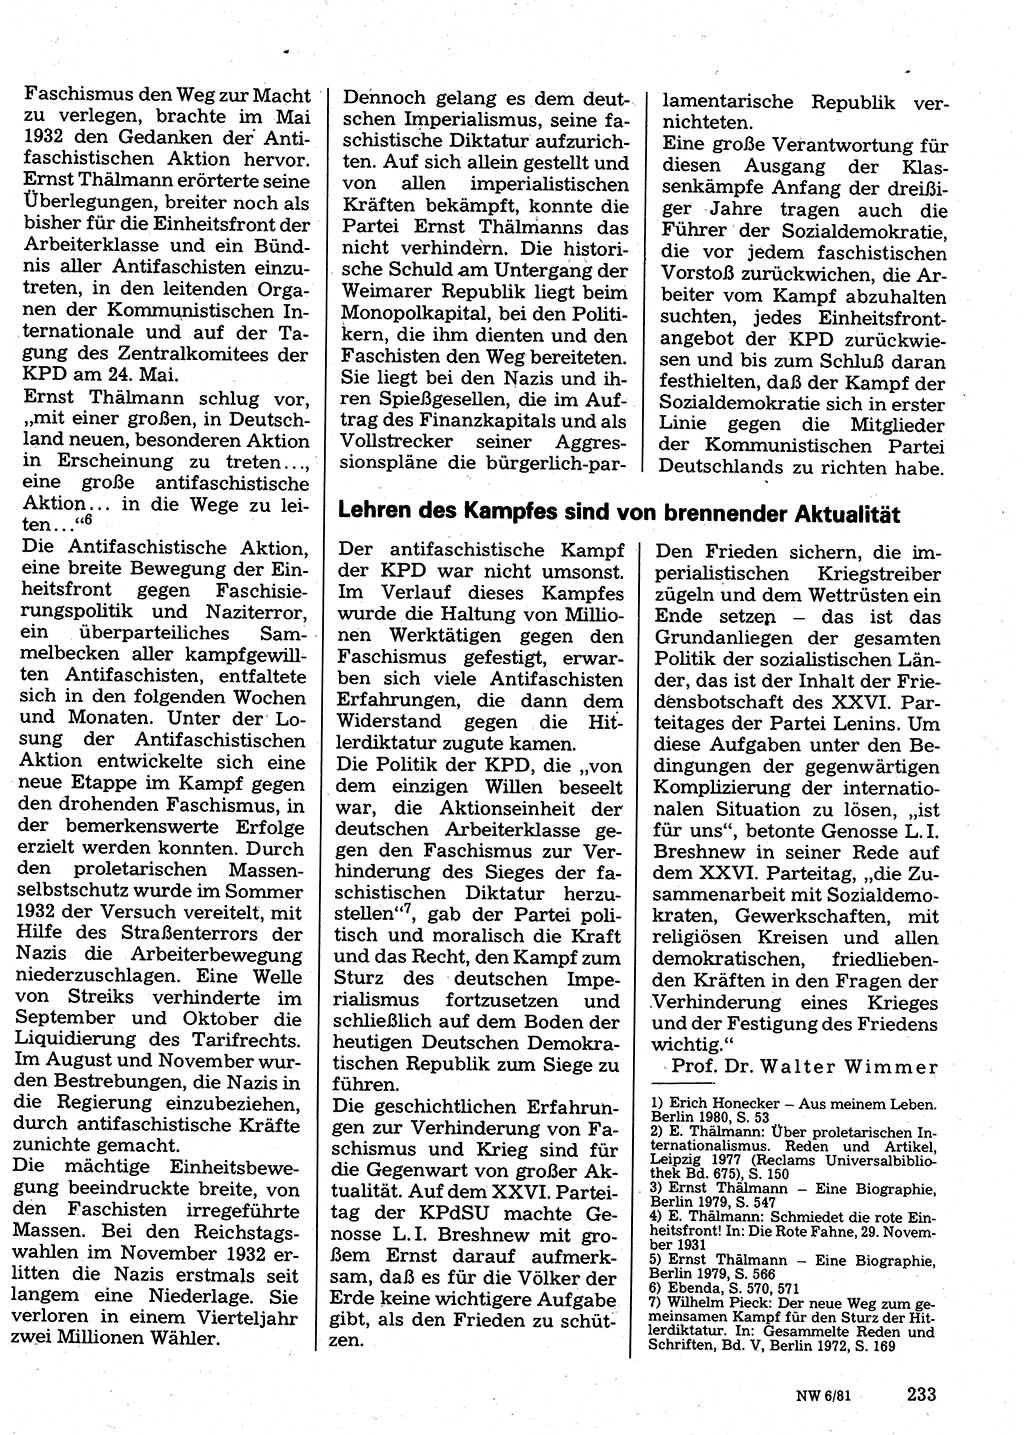 Neuer Weg (NW), Organ des Zentralkomitees (ZK) der SED (Sozialistische Einheitspartei Deutschlands) für Fragen des Parteilebens, 36. Jahrgang [Deutsche Demokratische Republik (DDR)] 1981, Seite 233 (NW ZK SED DDR 1981, S. 233)